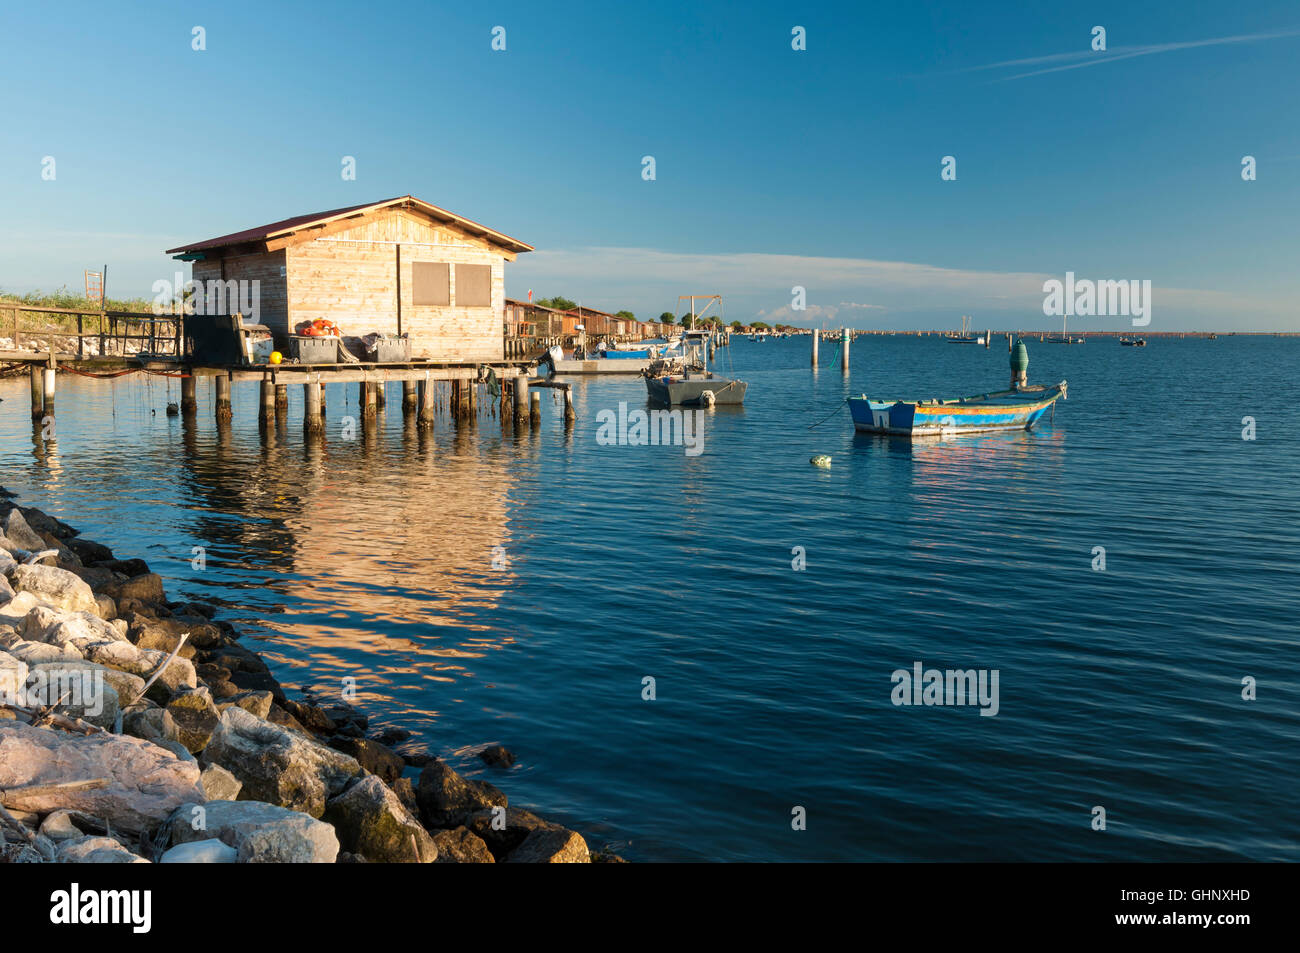 View of fishing hut and boats at the Scardovari Lagoon, Po river estuary, Rovigo, Italy Stock Photo